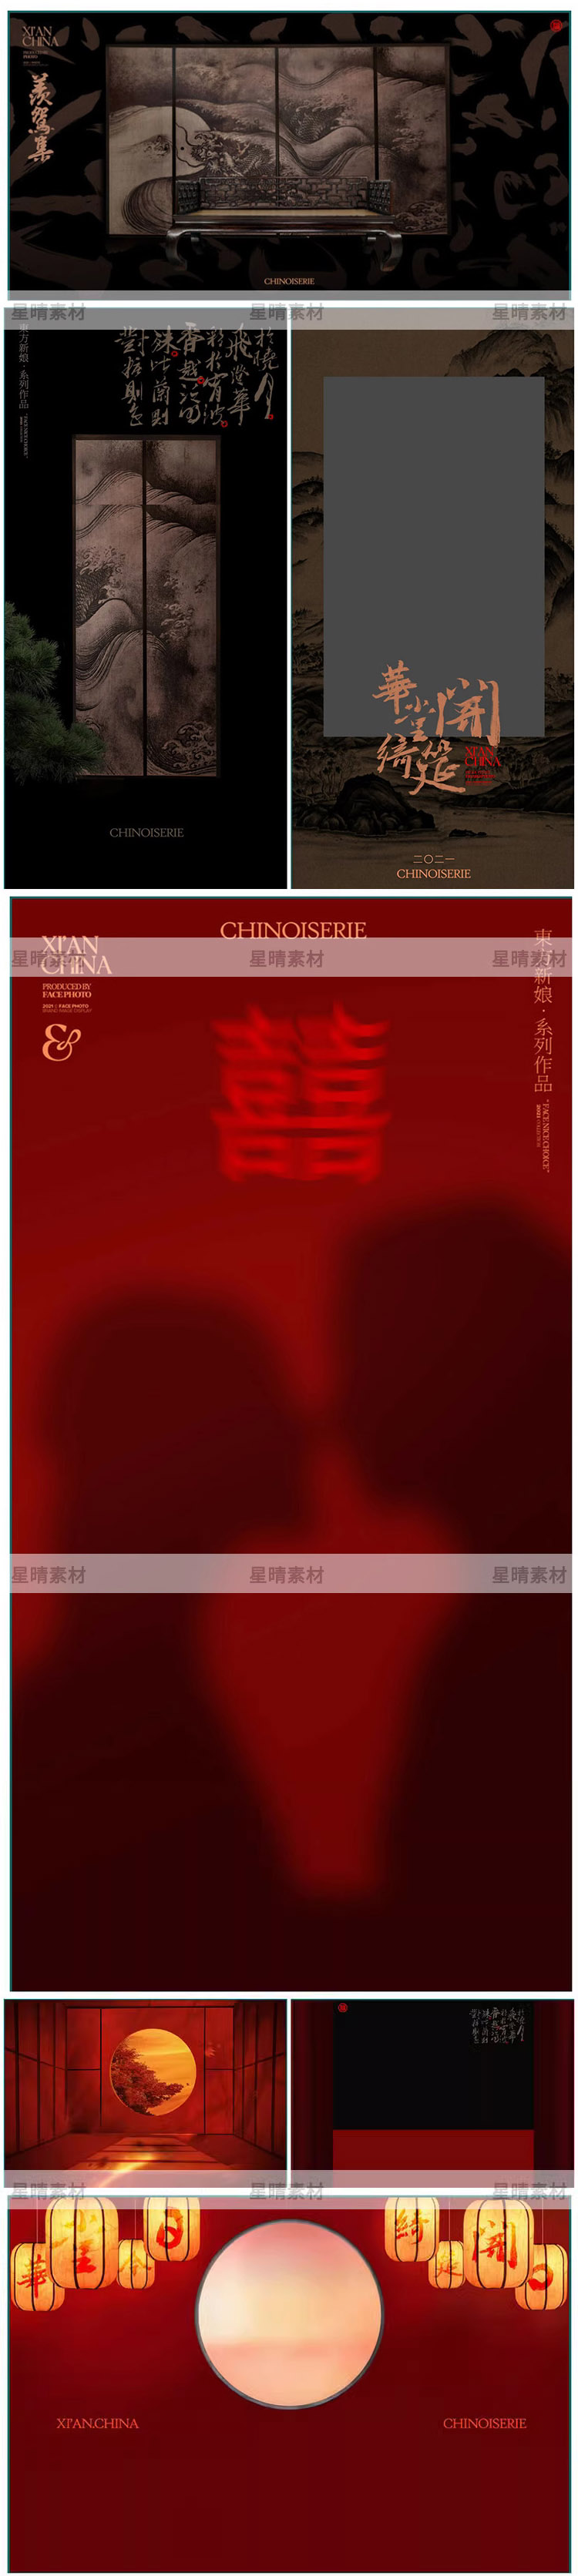 Psd-0993, Bộ 7 Psd Chất Liệu Nền Studio ảnh Cưới Mẫu Trang Phục đám Cưới Truyền Thống Cổ Xưa Xiuhe Bức Tranh Tỉ Mỉ Trung Quốc 2